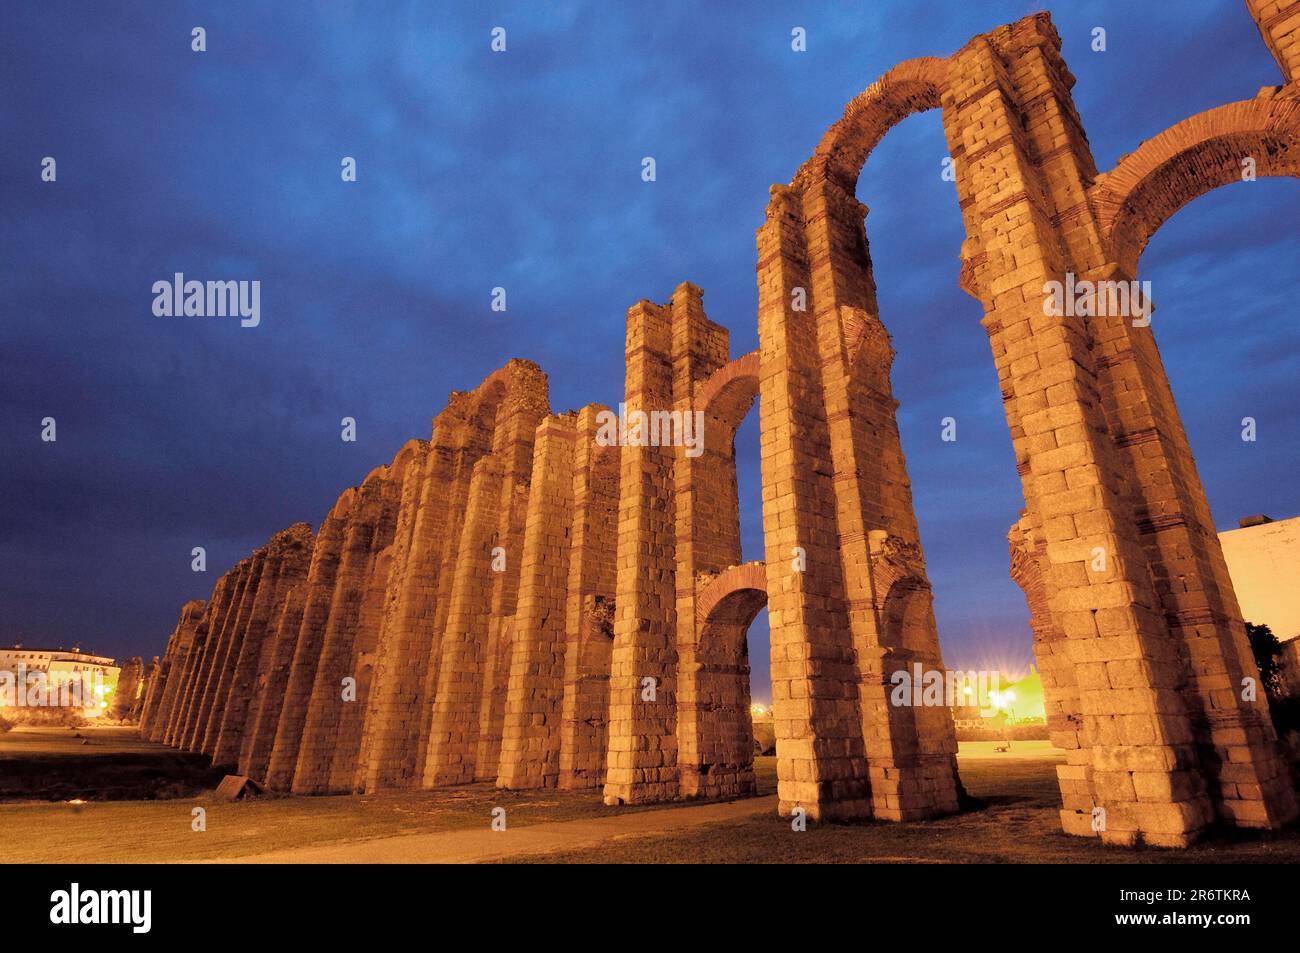 Acueducto de Los Milagros, Acueducto de, Ruta de La Plata, Mérida, Extremadura, Badajoz, España Foto de stock